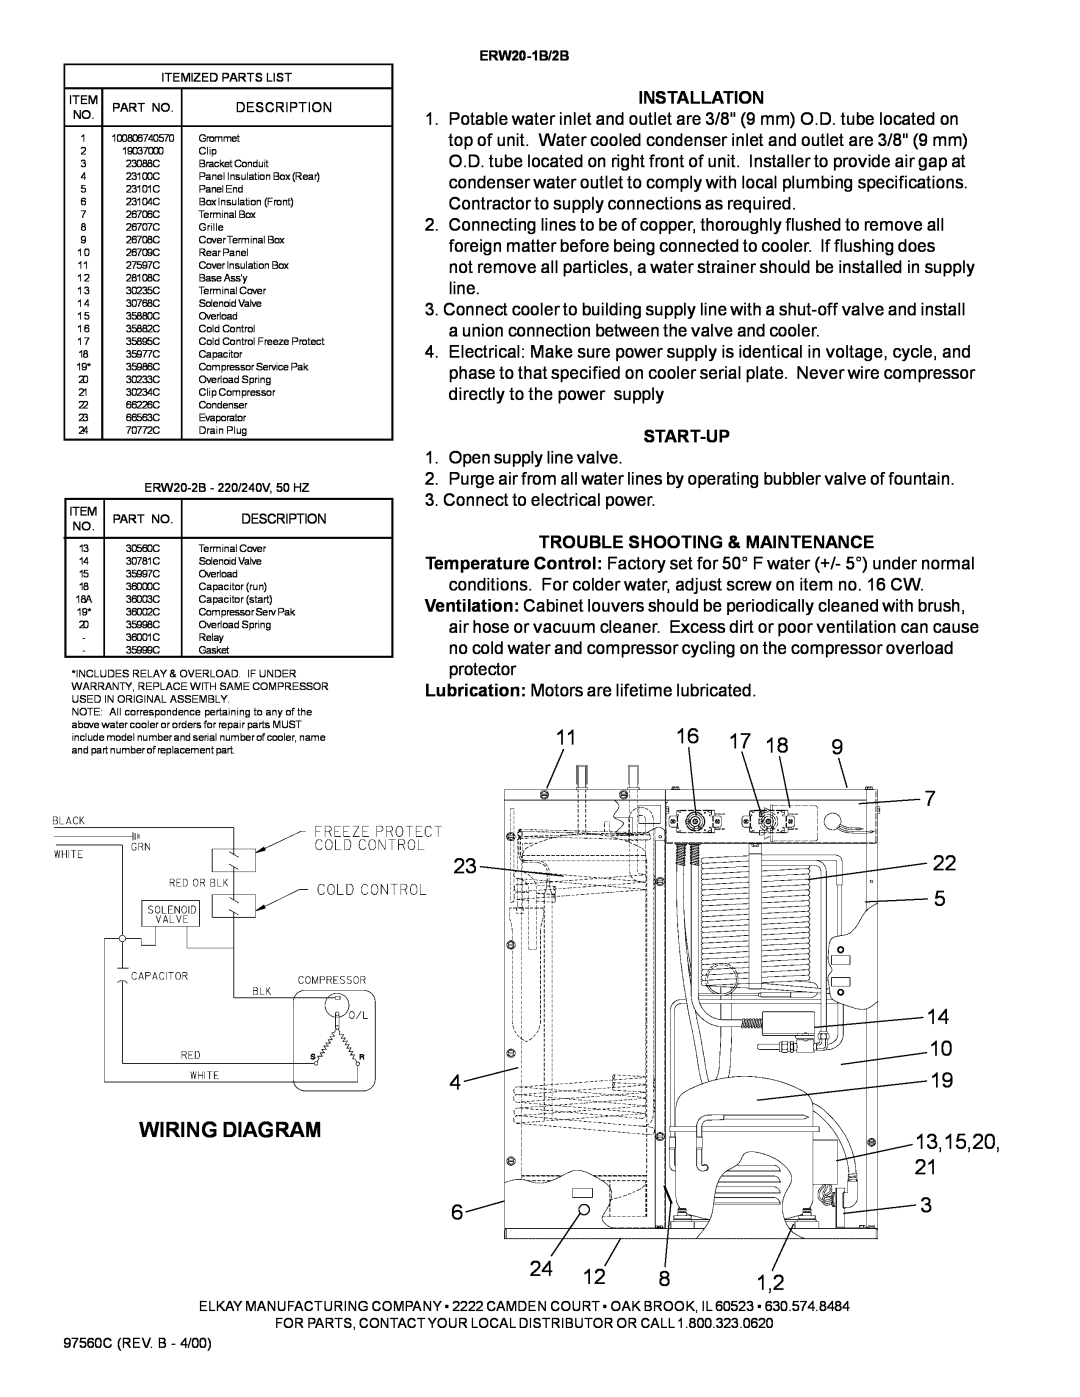 Elkay ERW20-2B, ERW20-1B installation instructions Wiring Diagram 